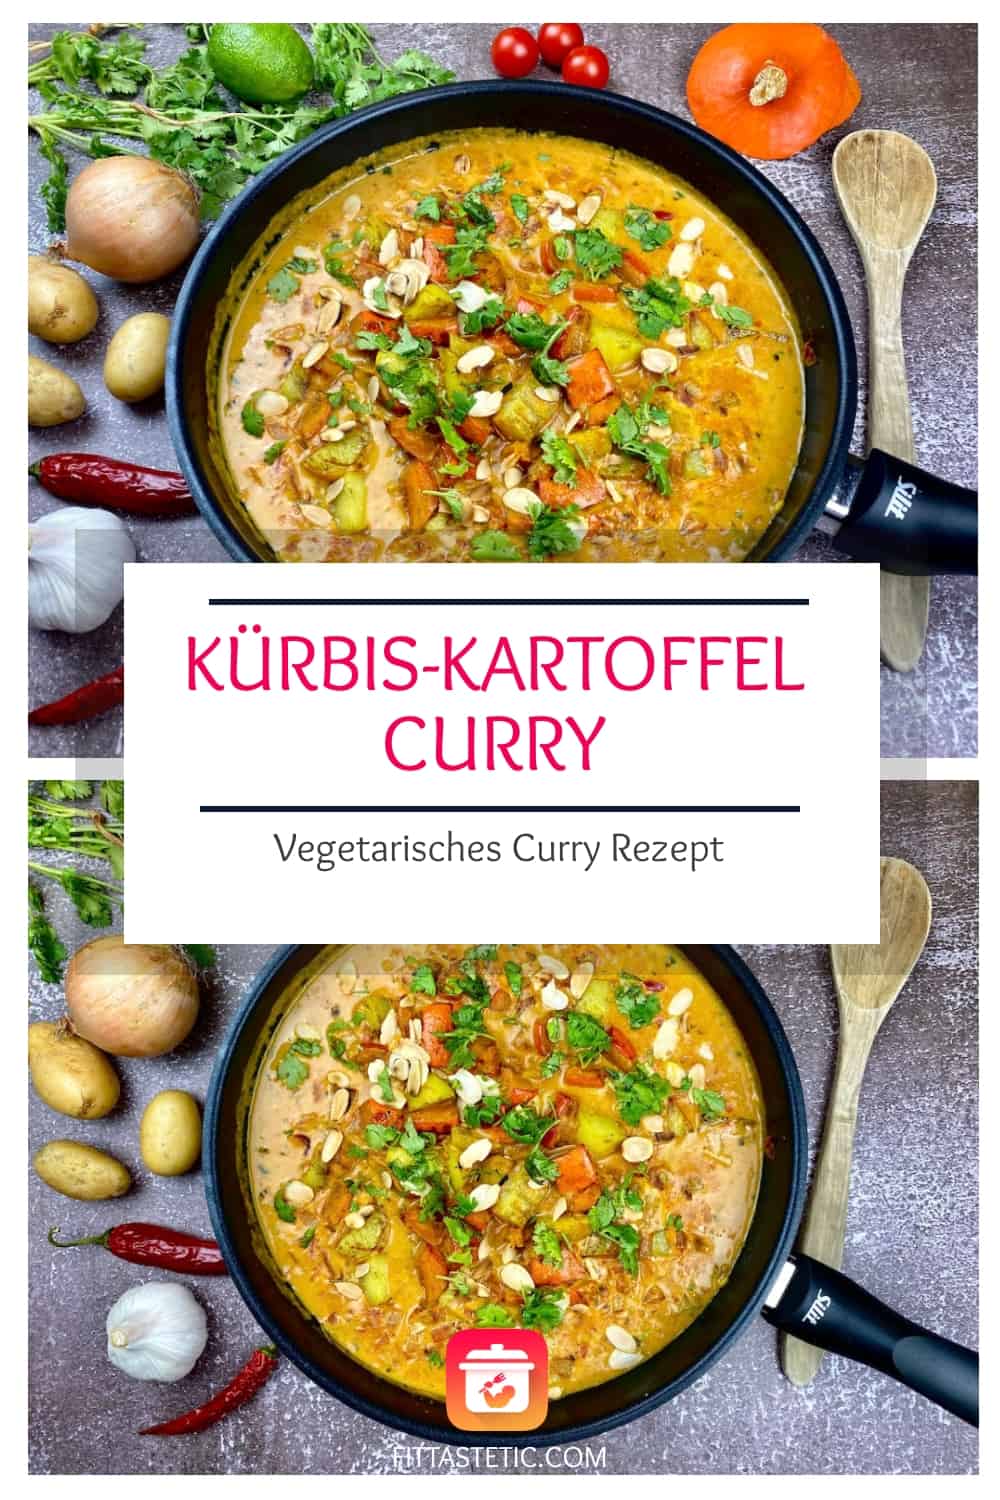 Kürbis-Kartoffel-Curry - Vegetarisches Curry Rezept